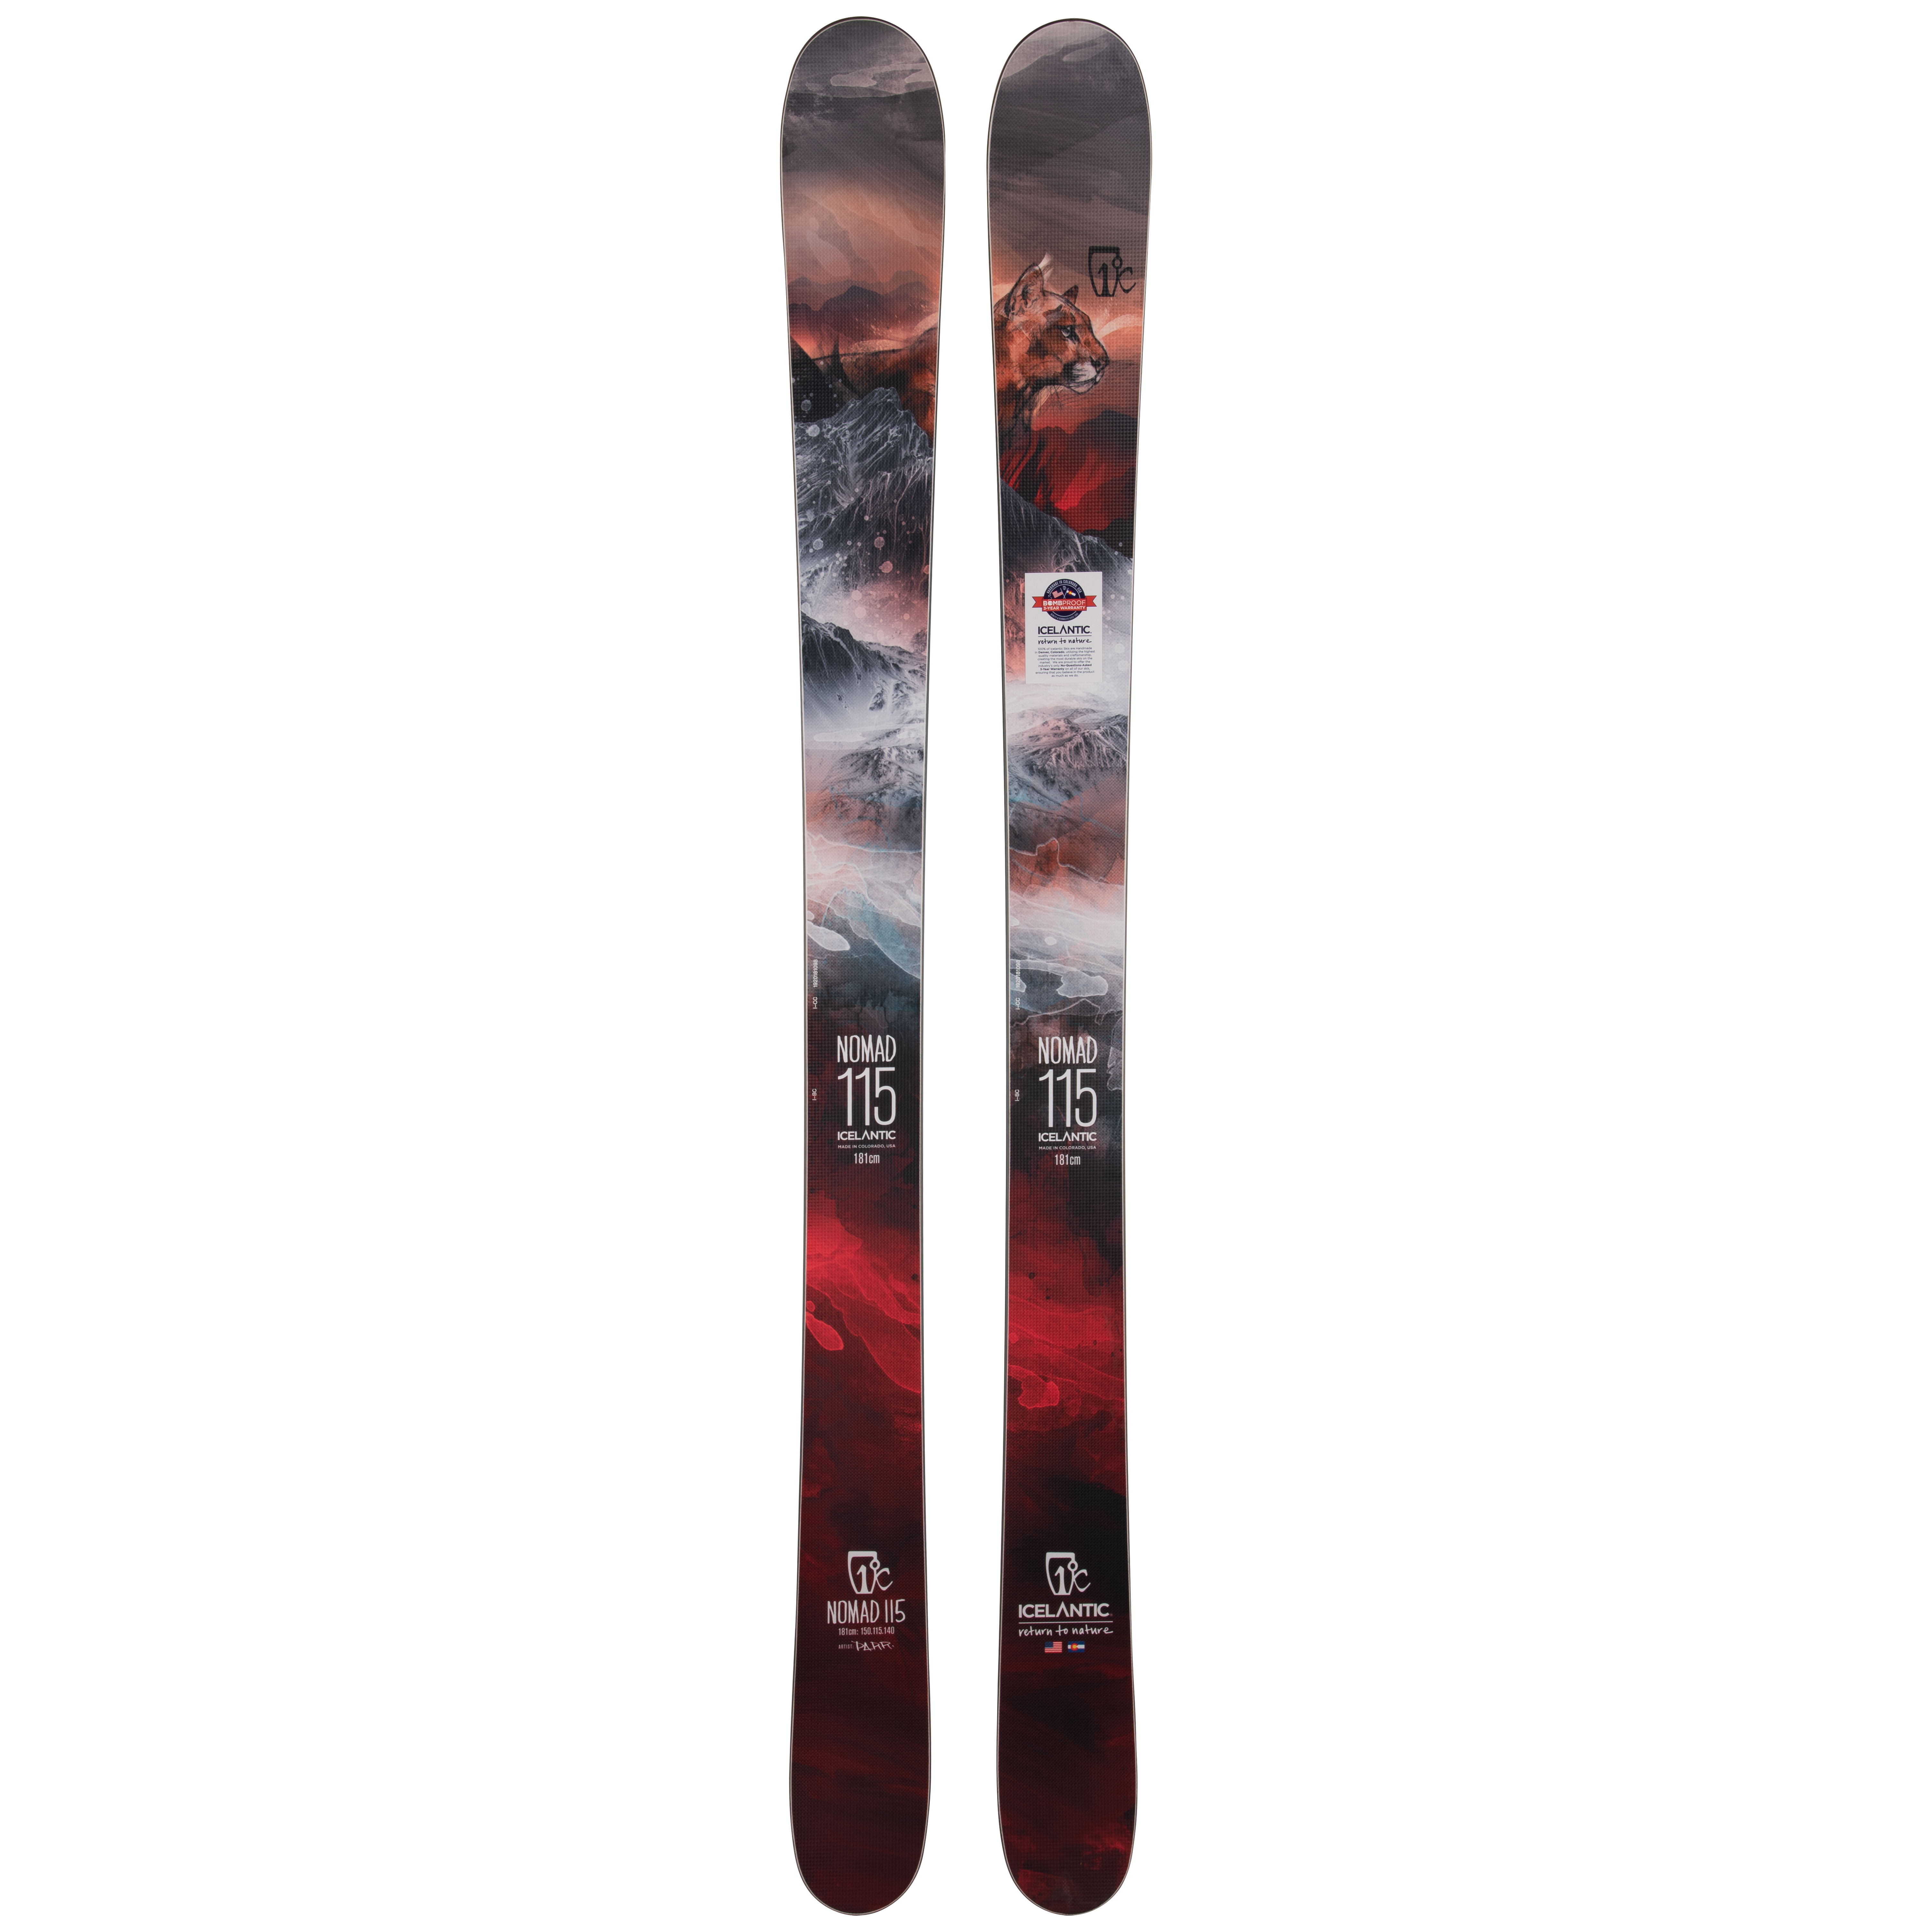 Лыжи для фрирайда Icelantic Nomad 115 2019/2020 181cm